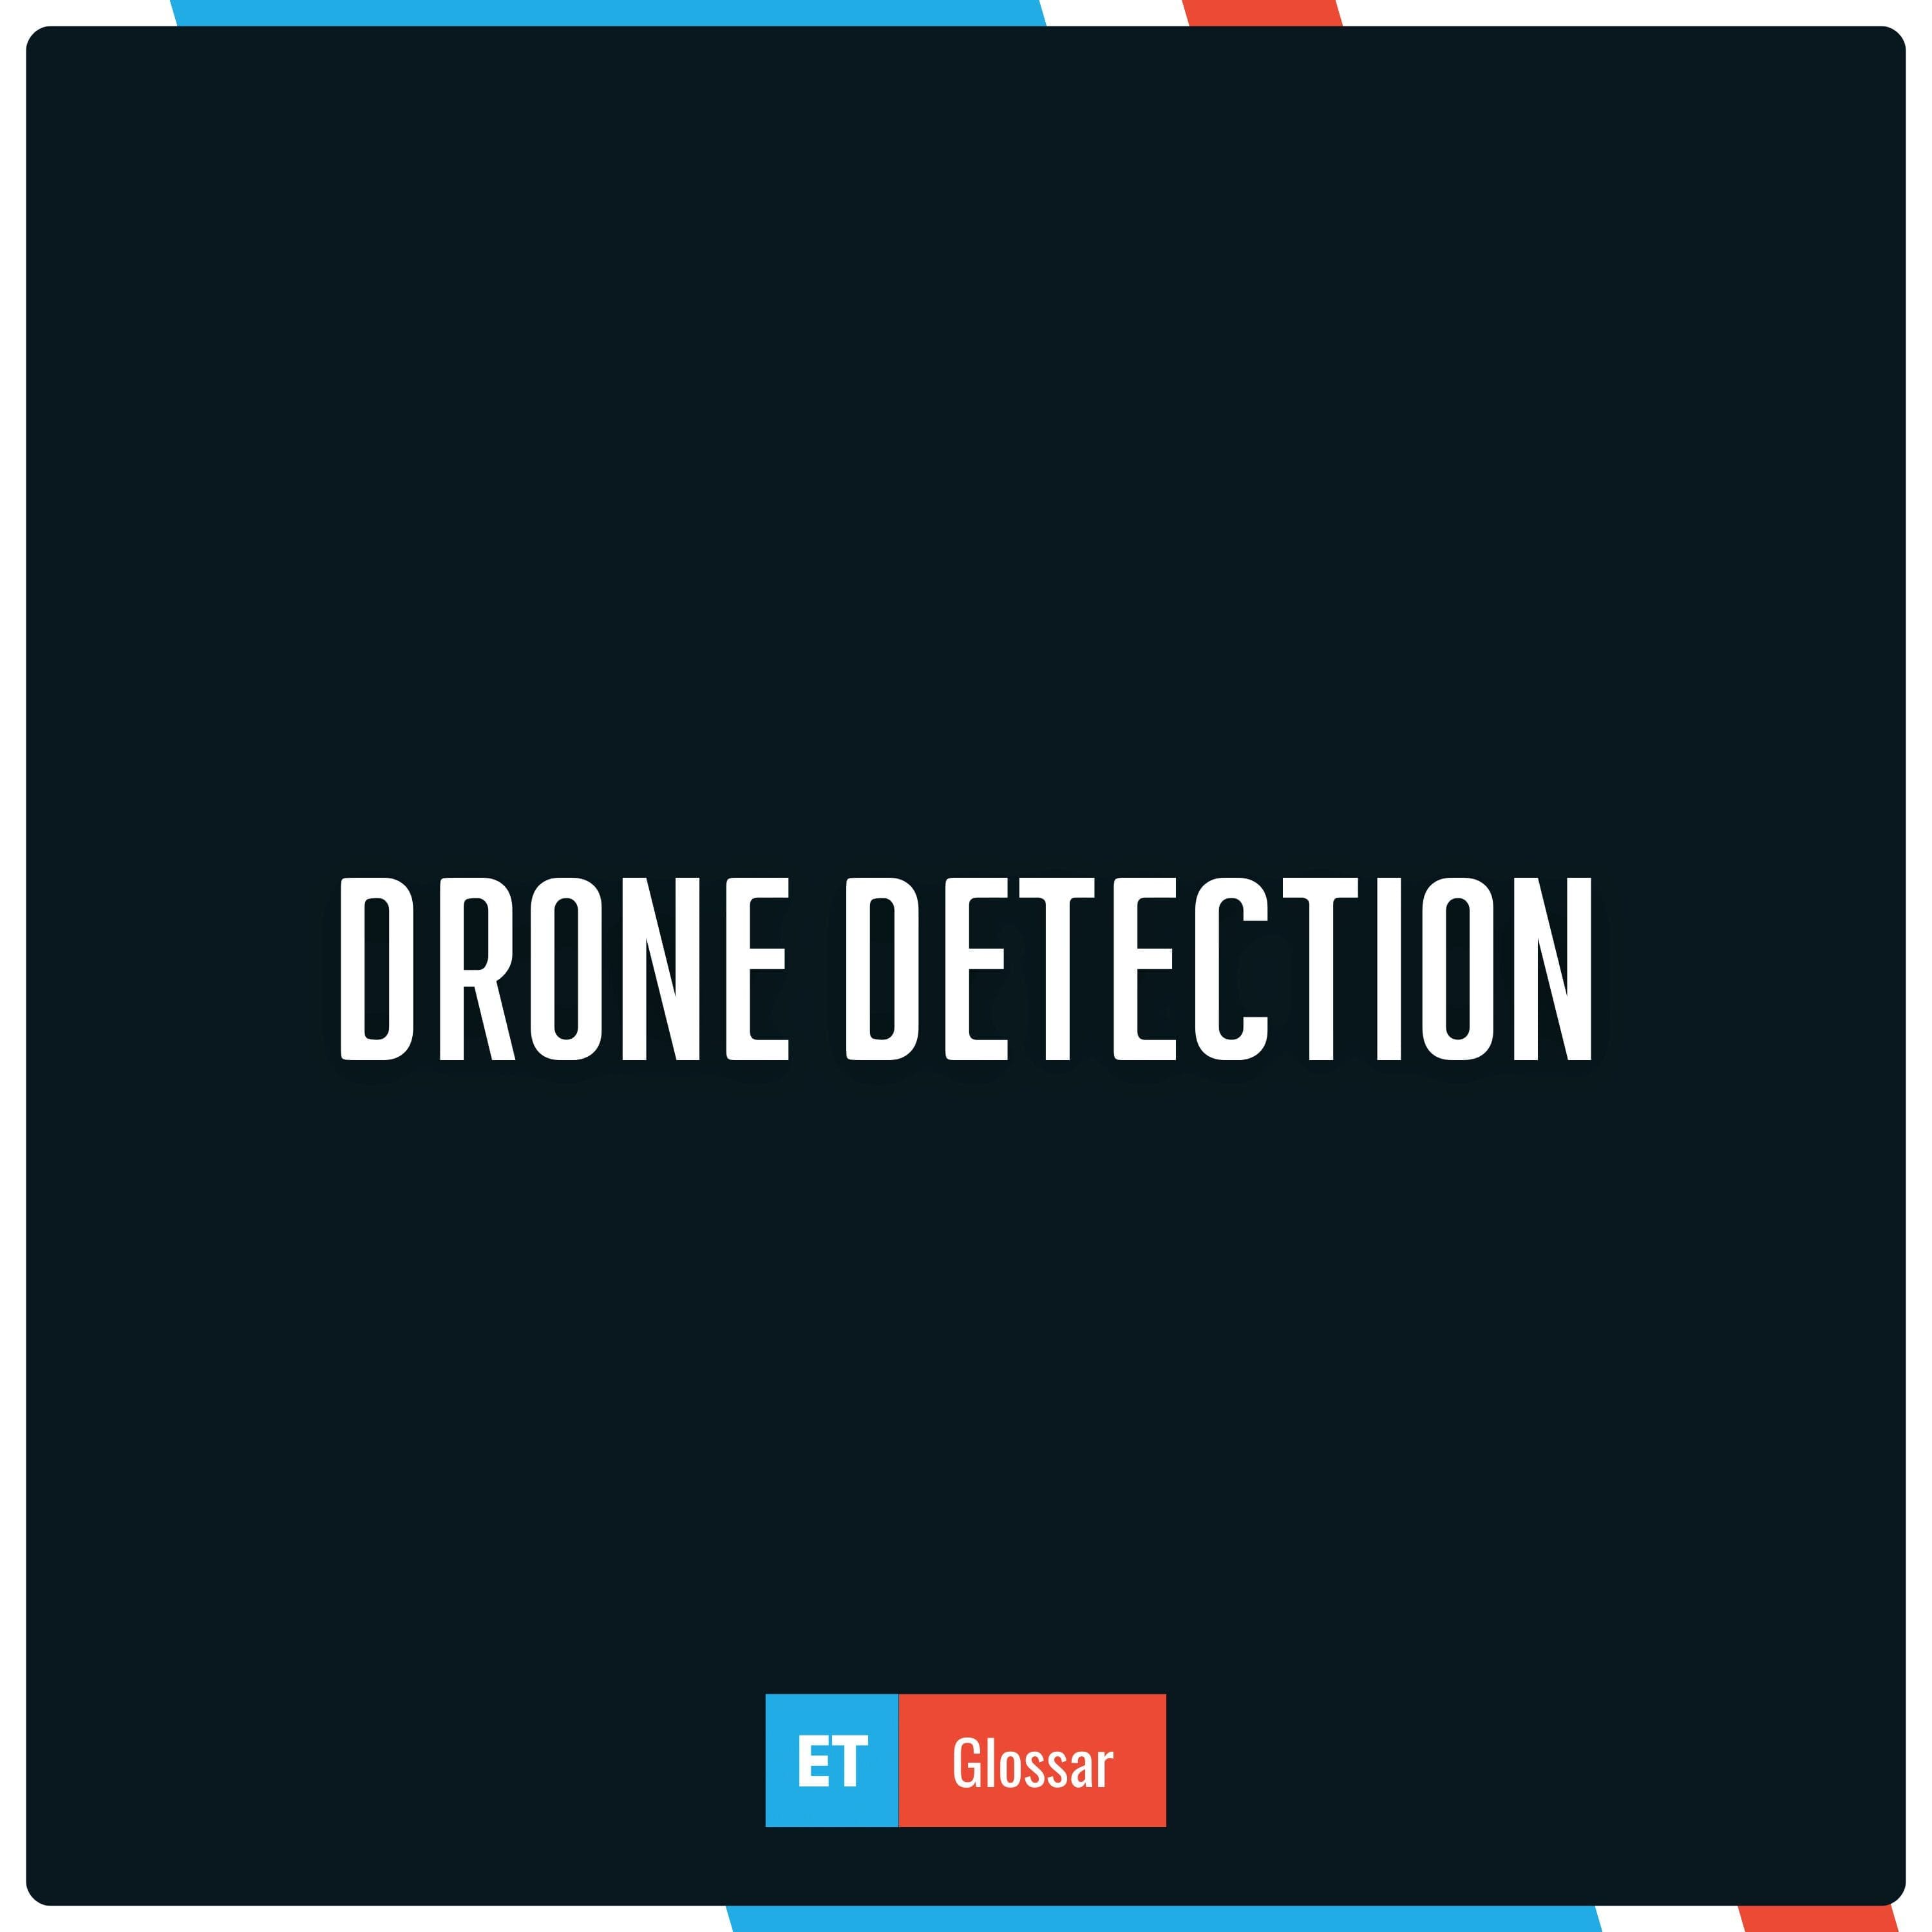 Drone Detection einfach erklärt im Exciting Tech Glossar